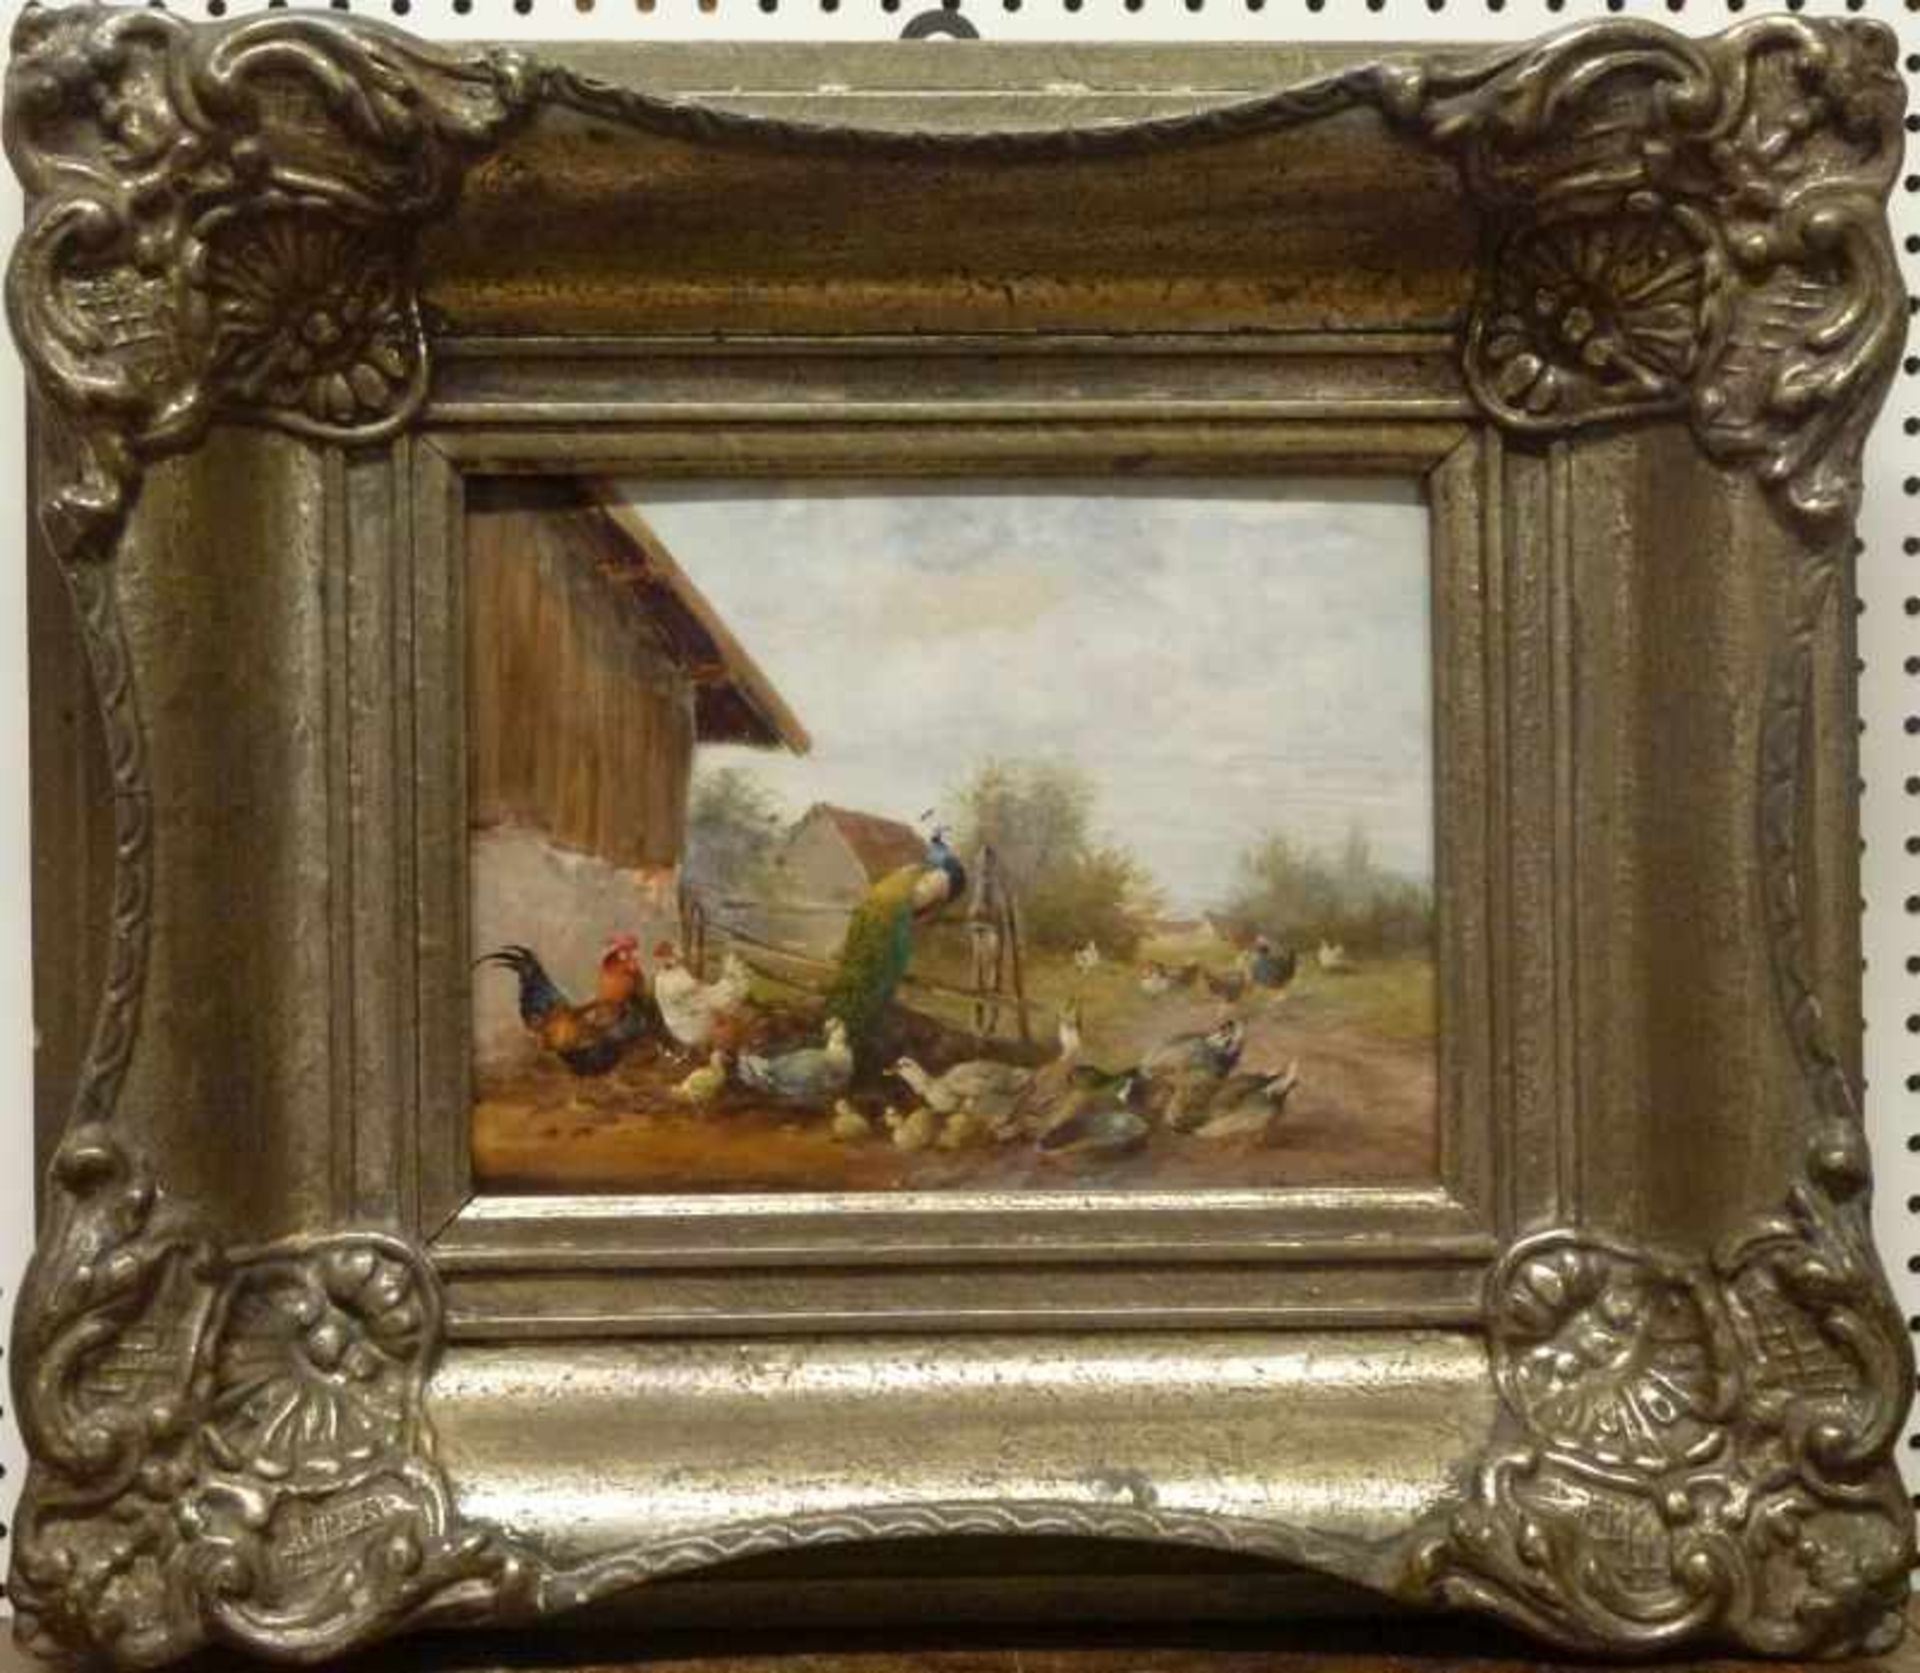 Hühnerhof, Max I Hänger (1874-1941) Öl/Holz, sign., Hühner, Enten und Pfau neben Hof, GR,18x24cm - Bild 2 aus 3